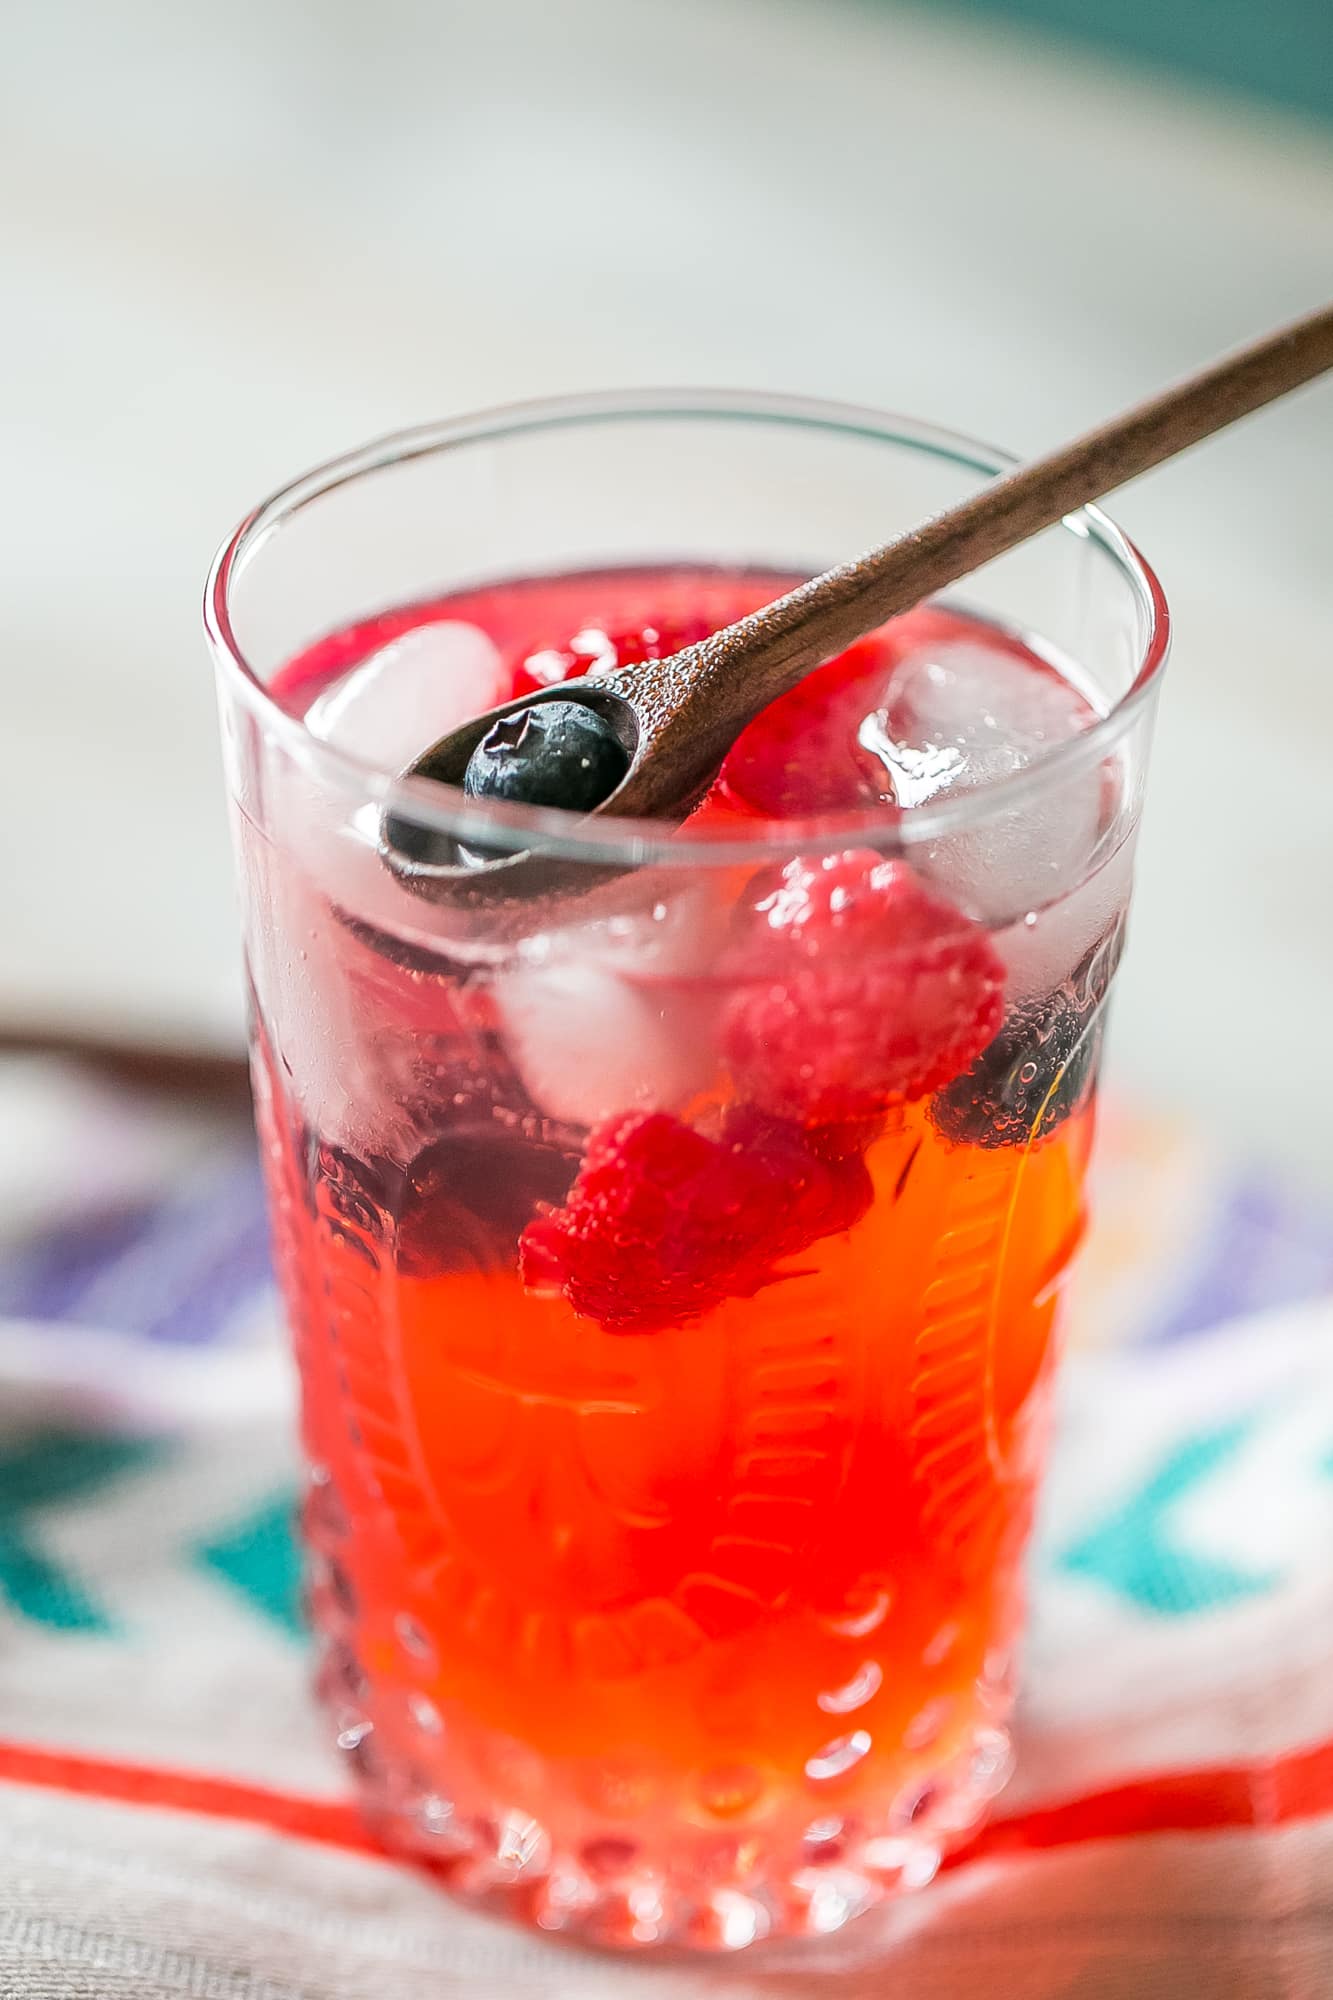 red lemonade with strawberries and blackberries in it